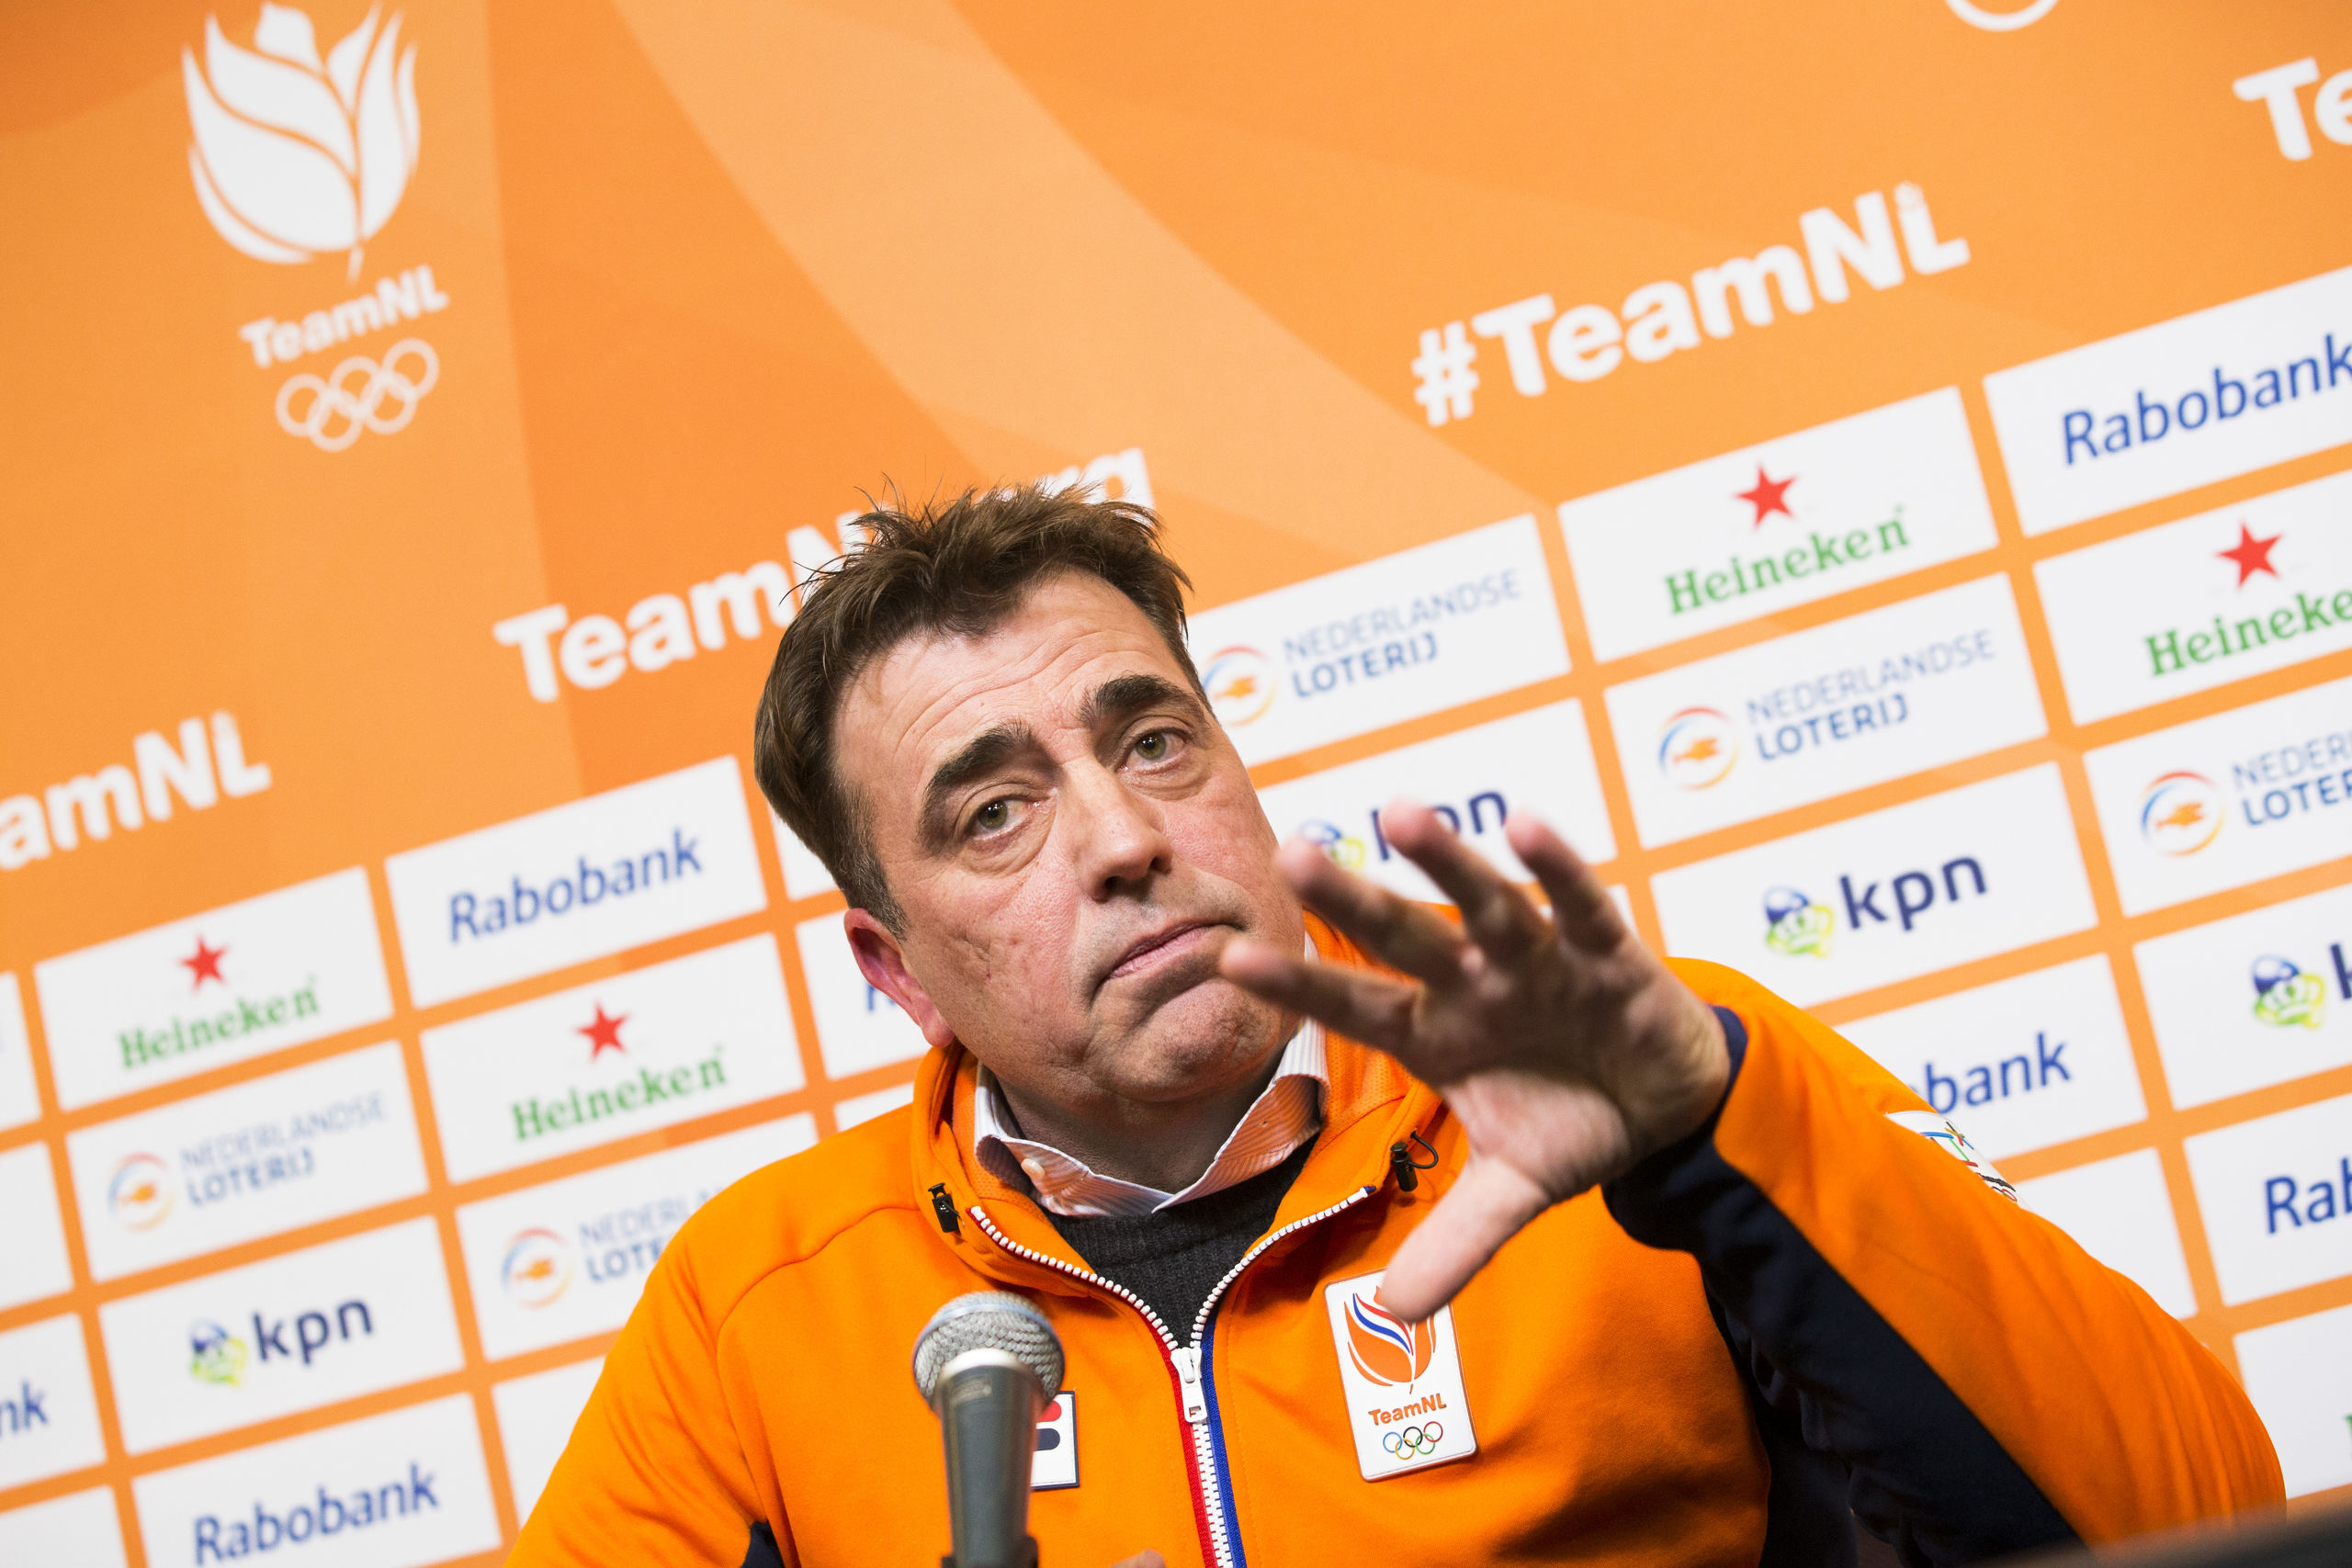 Chef de mission Jeroen Bijl tijdens de persconferentie in het Holland Heineken House voorafgaand aan de Olympische Winterspelen van Pyeongchang.